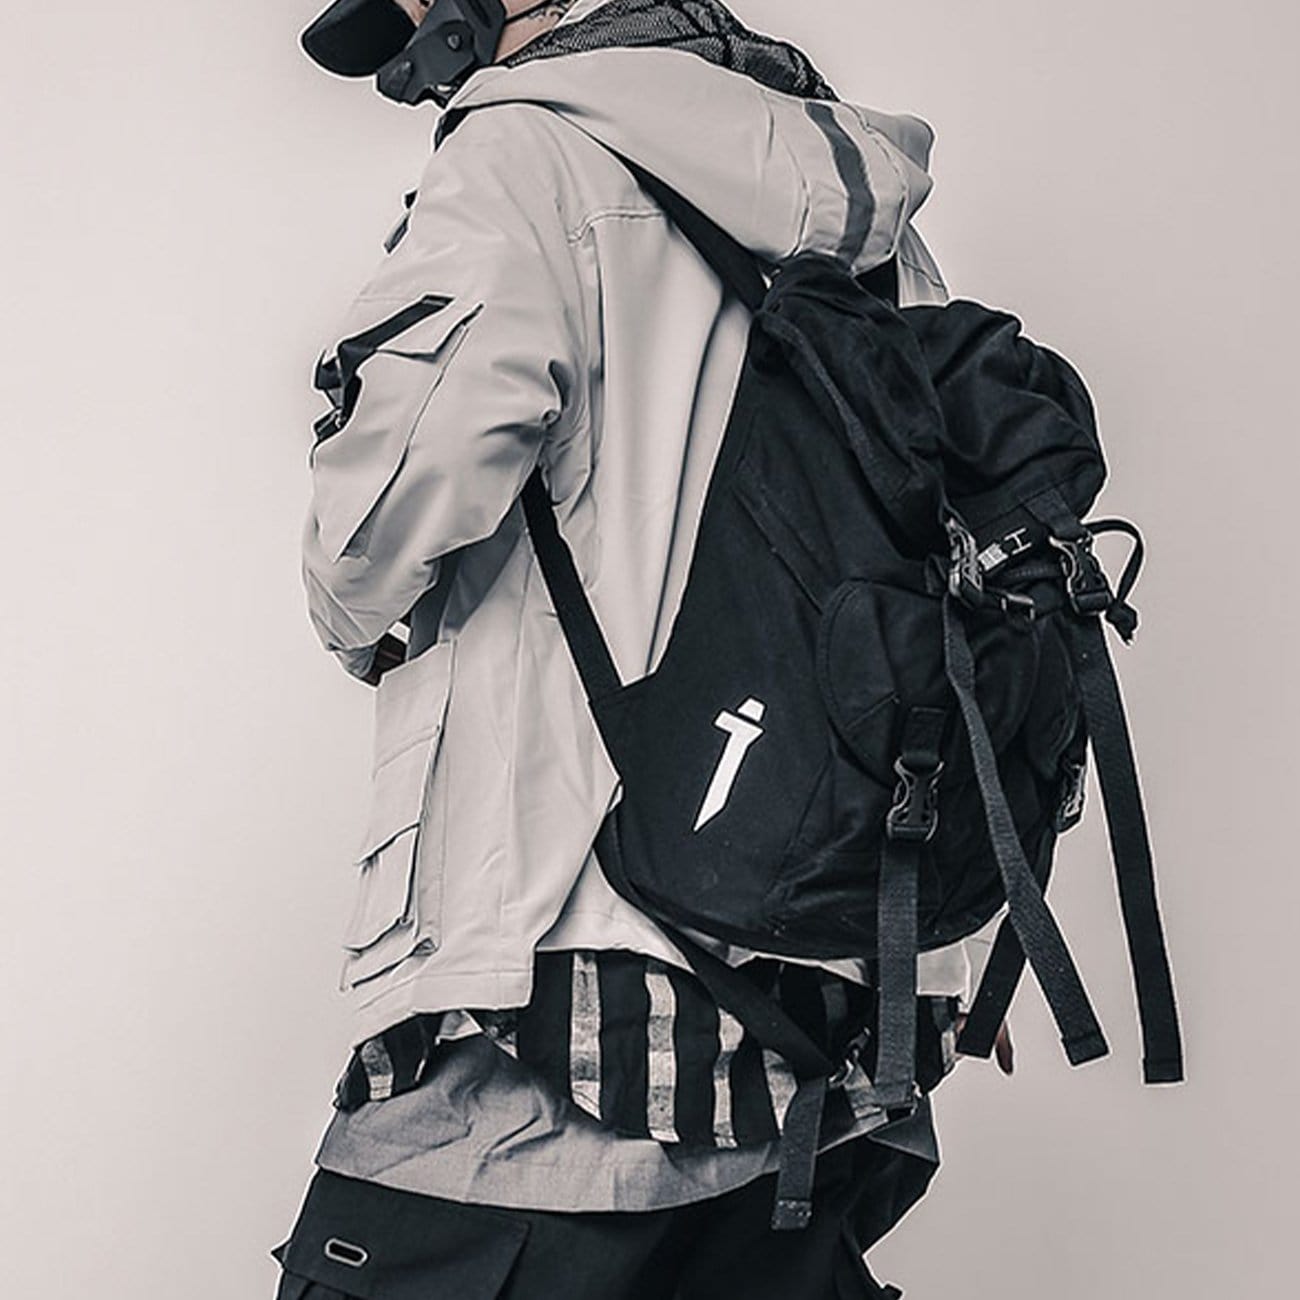 Retro Hooded Workwear Jacket Streetwear Brand Techwear Combat Tactical YUGEN THEORY